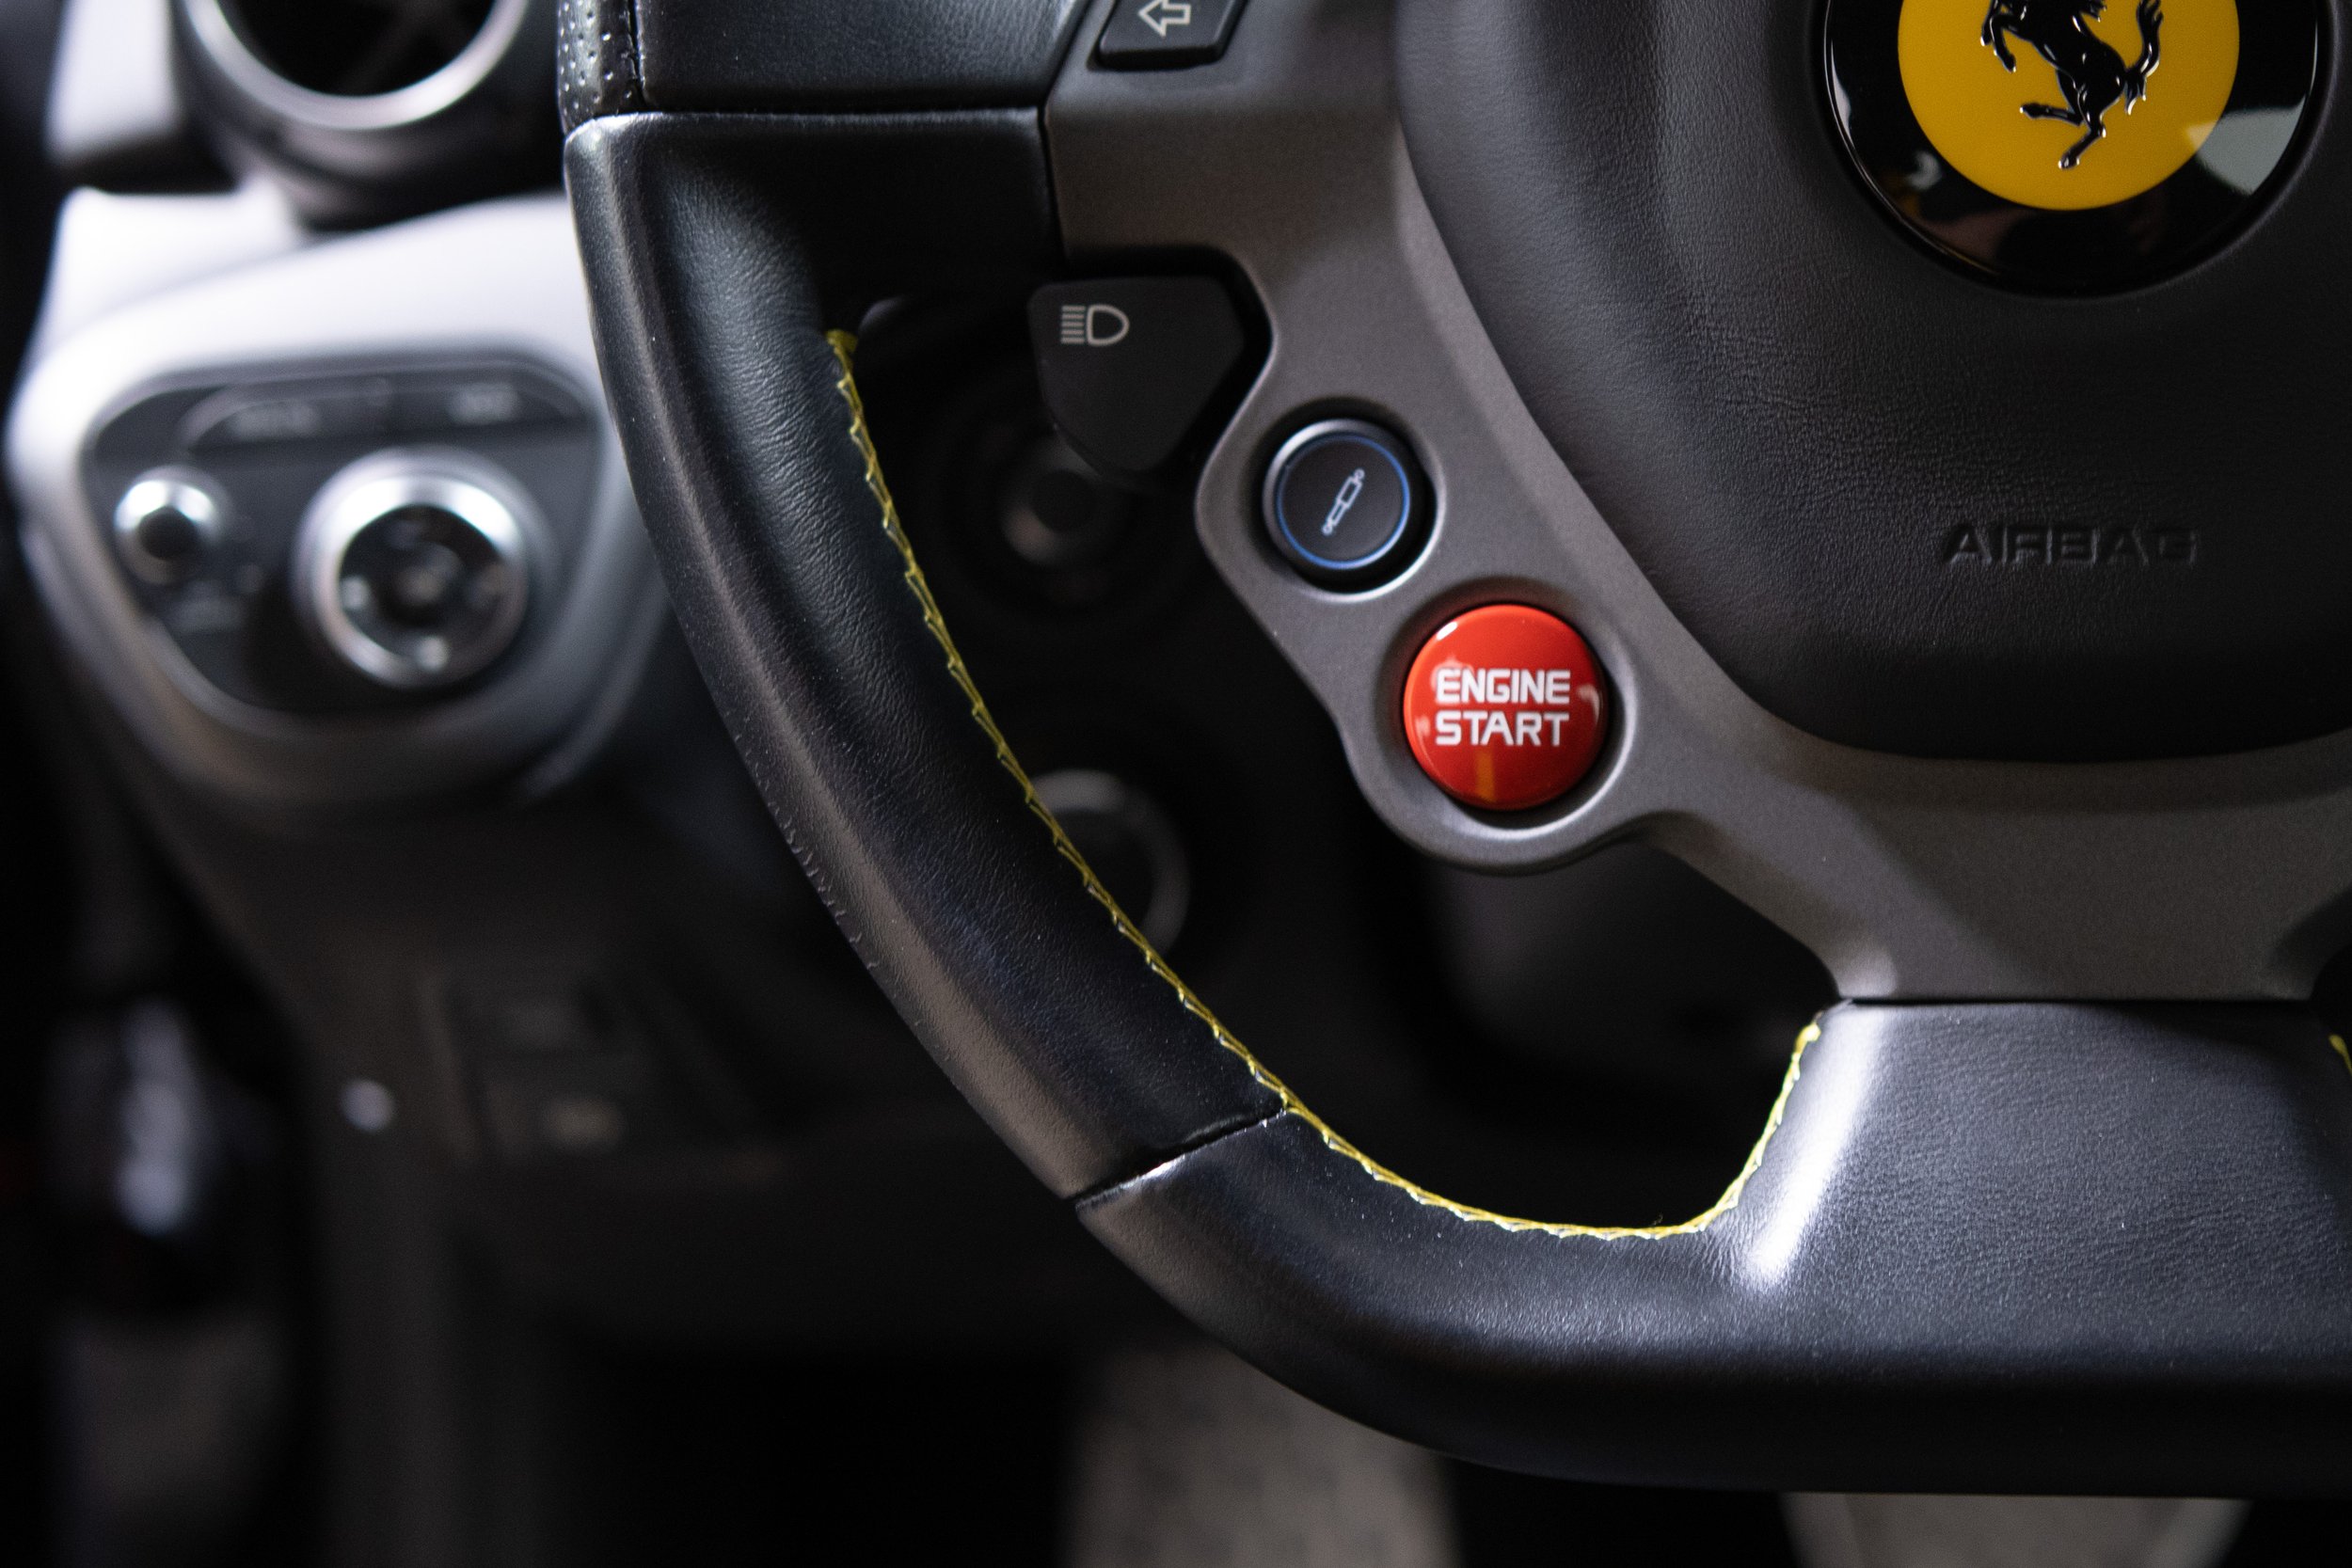 2014 Ferrari F12 Berlinetta-52.jpg